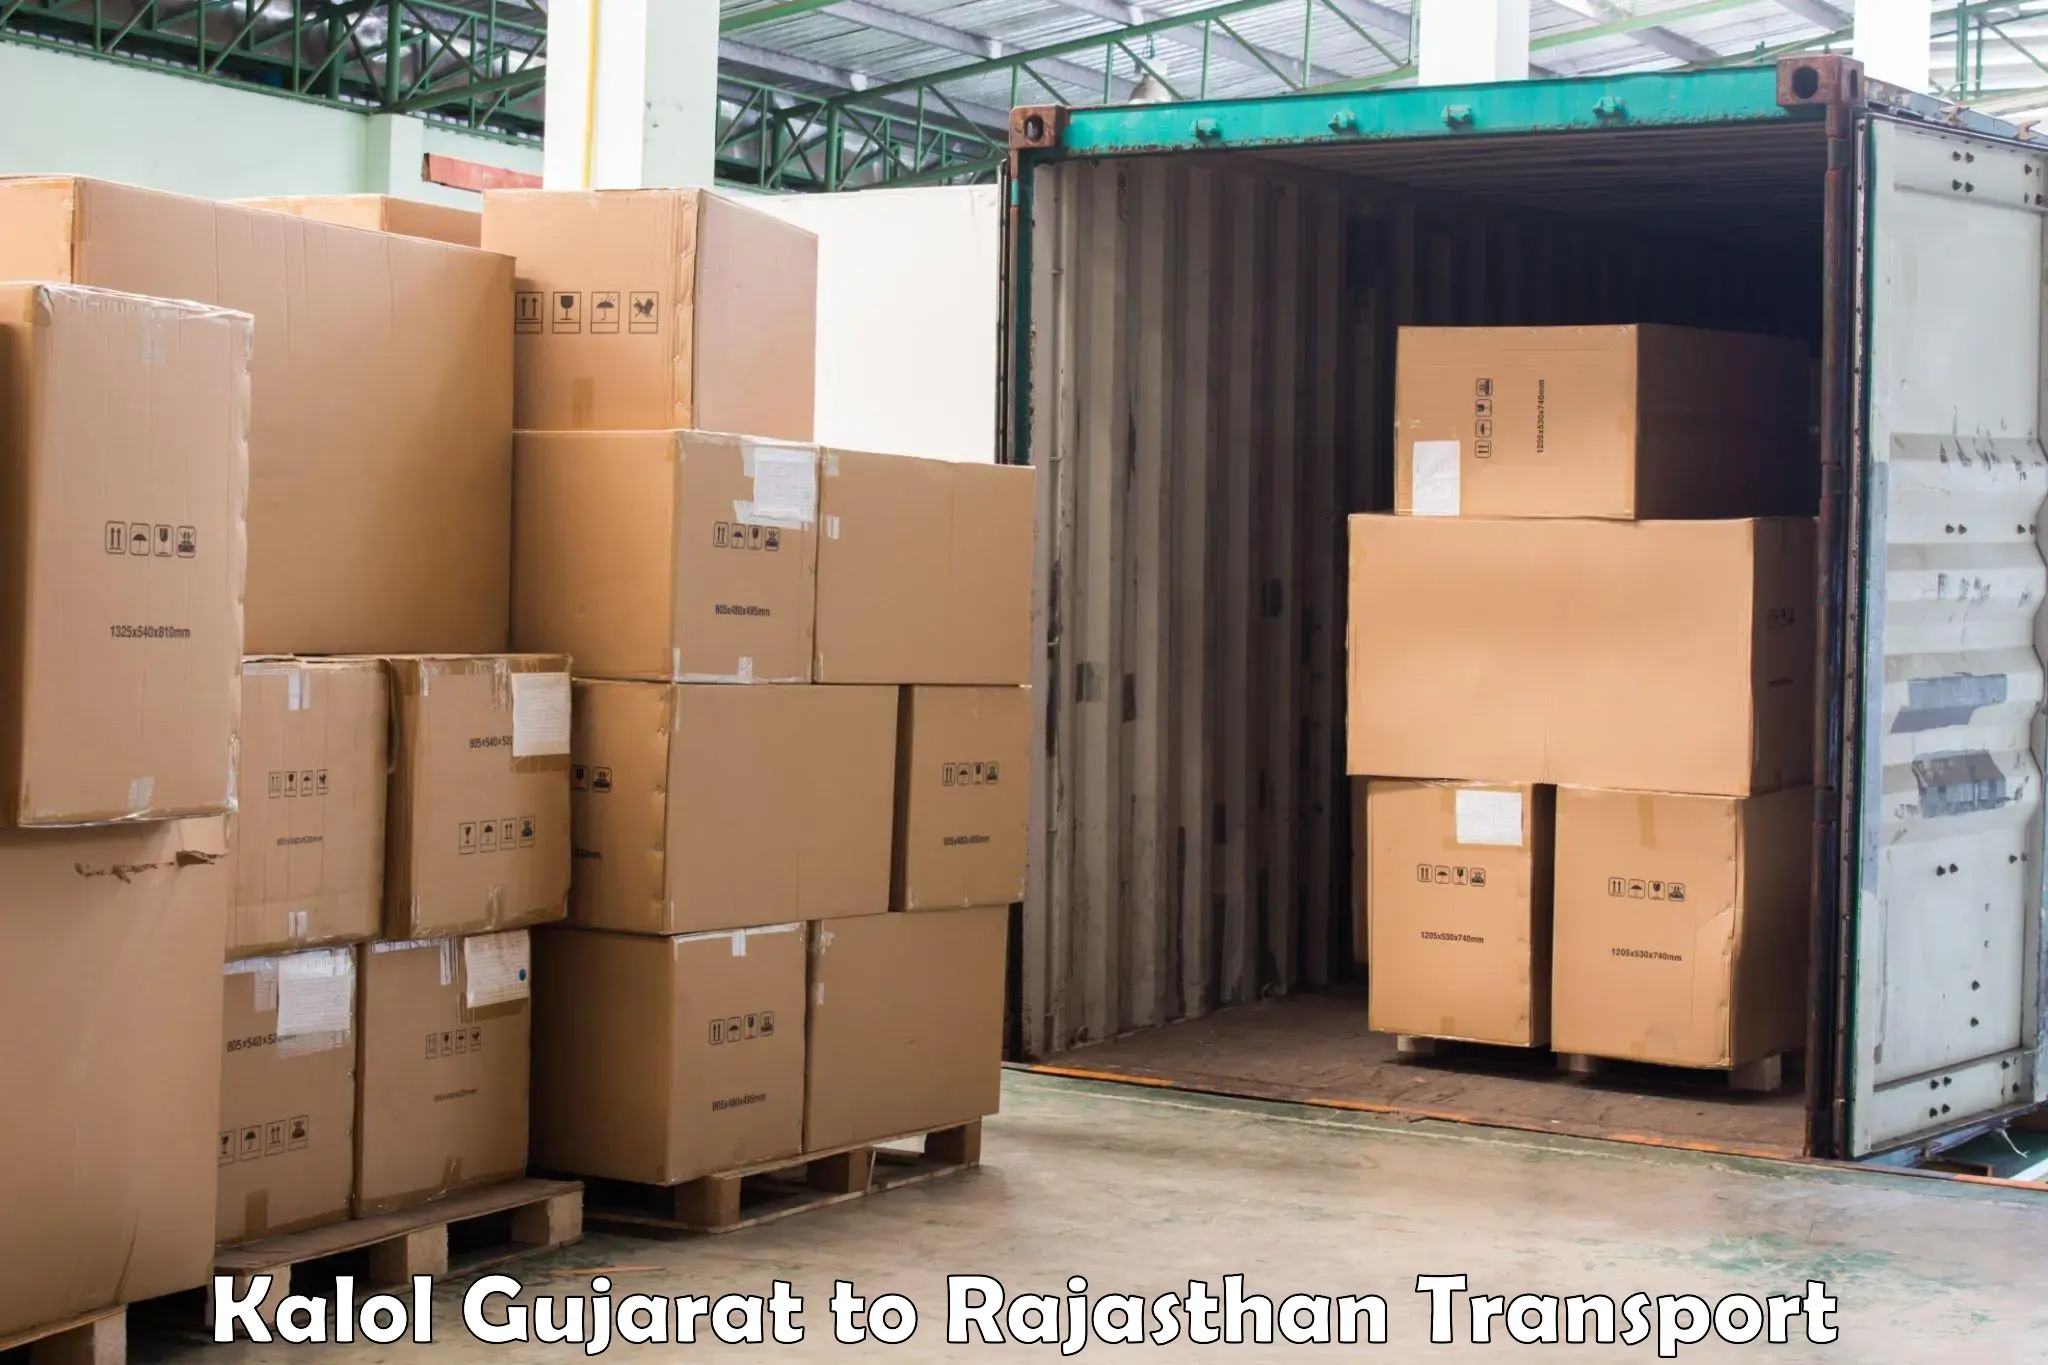 Daily parcel service transport Kalol Gujarat to Bissau